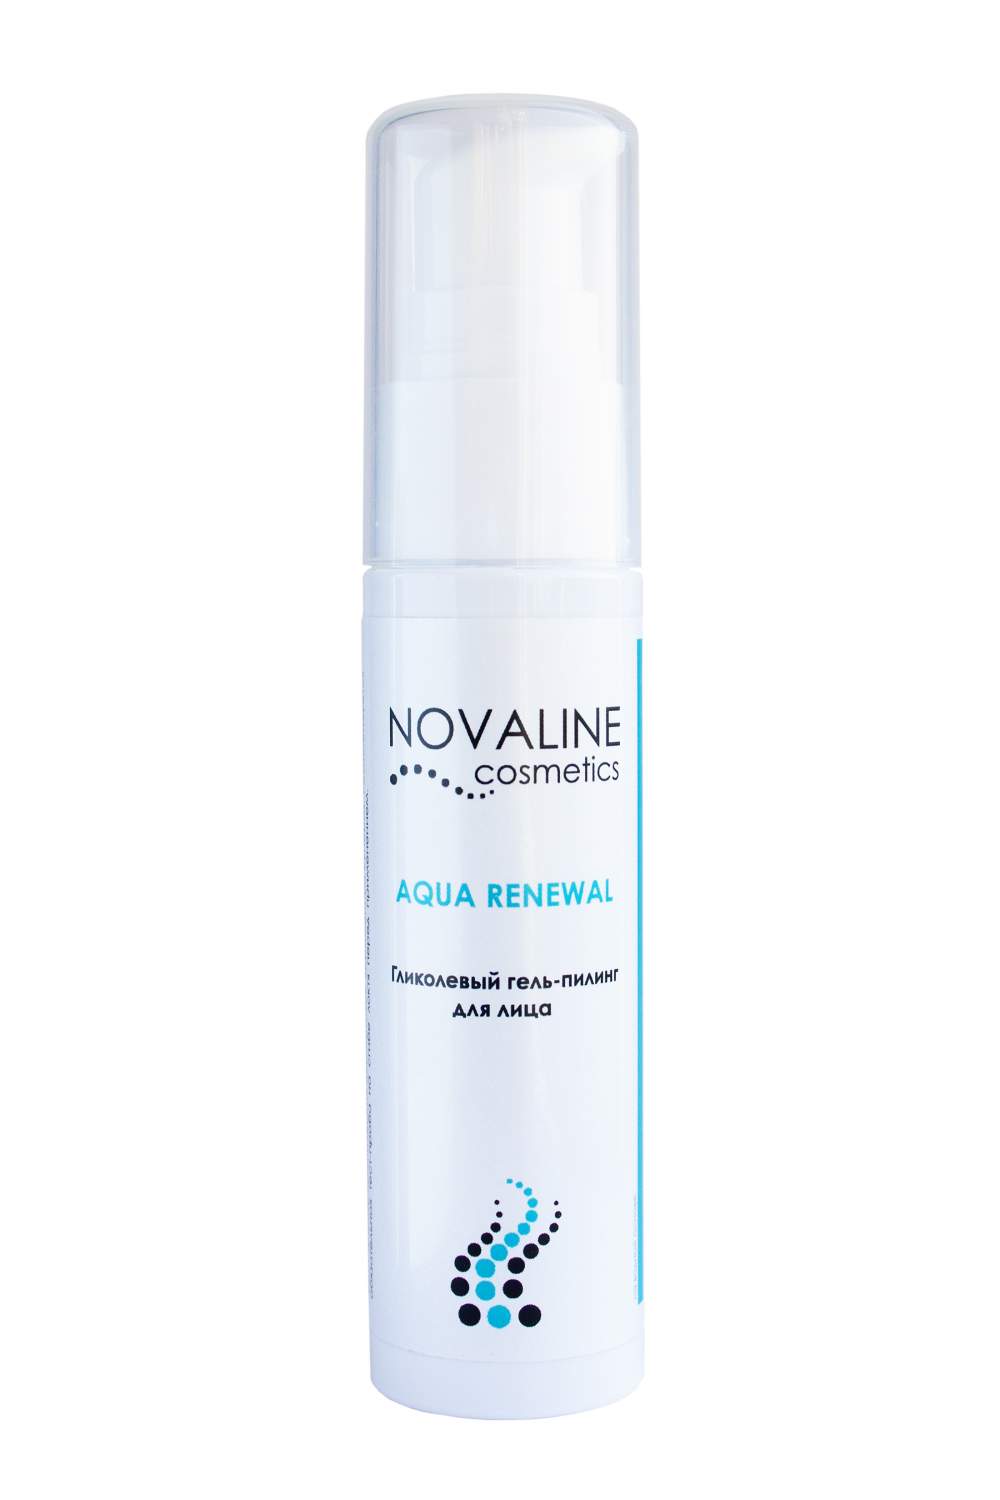 Novaline. Premium гель-пилинг для лица professional re Generation Aha 10%. Novaline Cosmetics пилинг гидрогелевый. Amino Soft восстанавливающим гелем. Гидрогелевая маска пилинг купить Novaline.